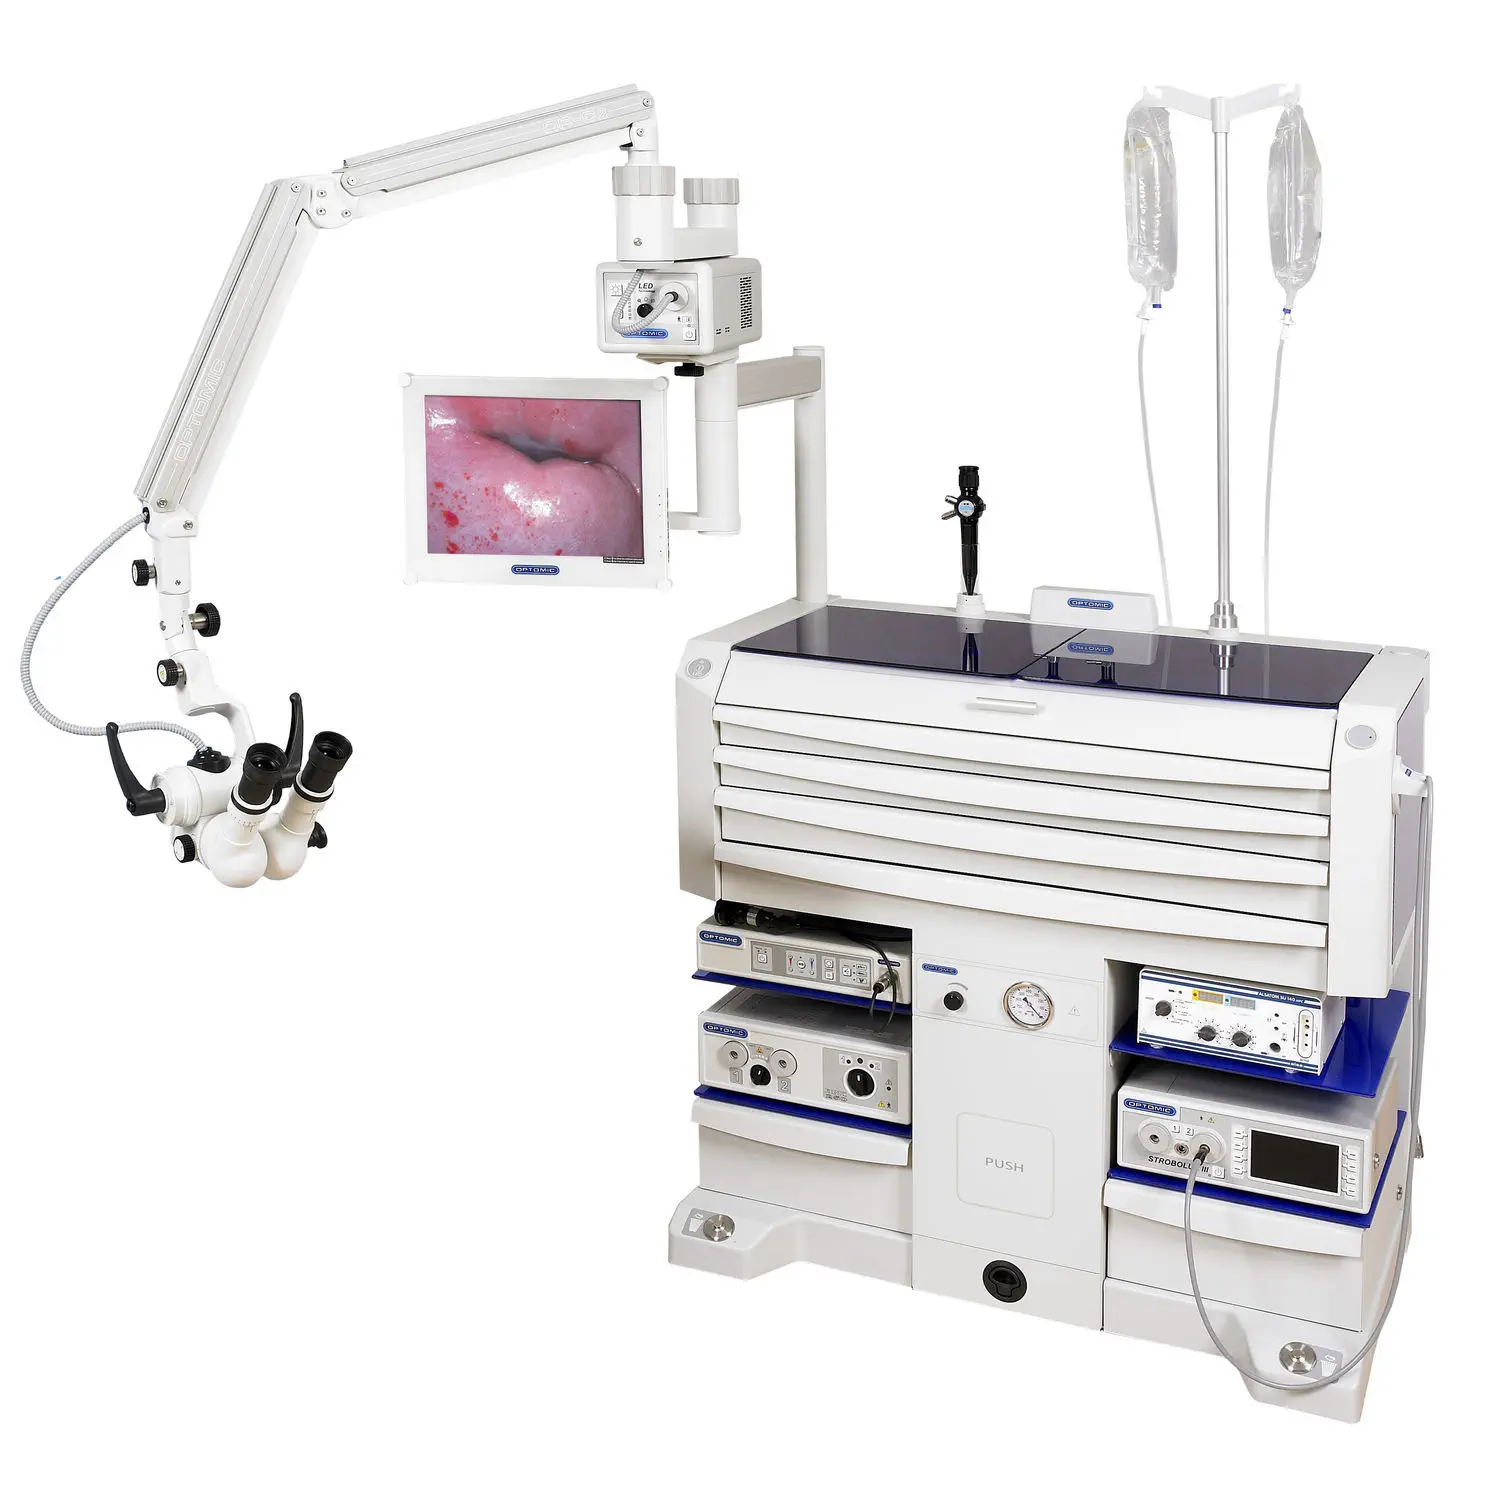 ชุดเครื่องมือตรวจหู คอ จมูก วีดิทัศน์ชุดใหญ่  Gynecological workstation OPTIMUS GYN  OPTOMIC